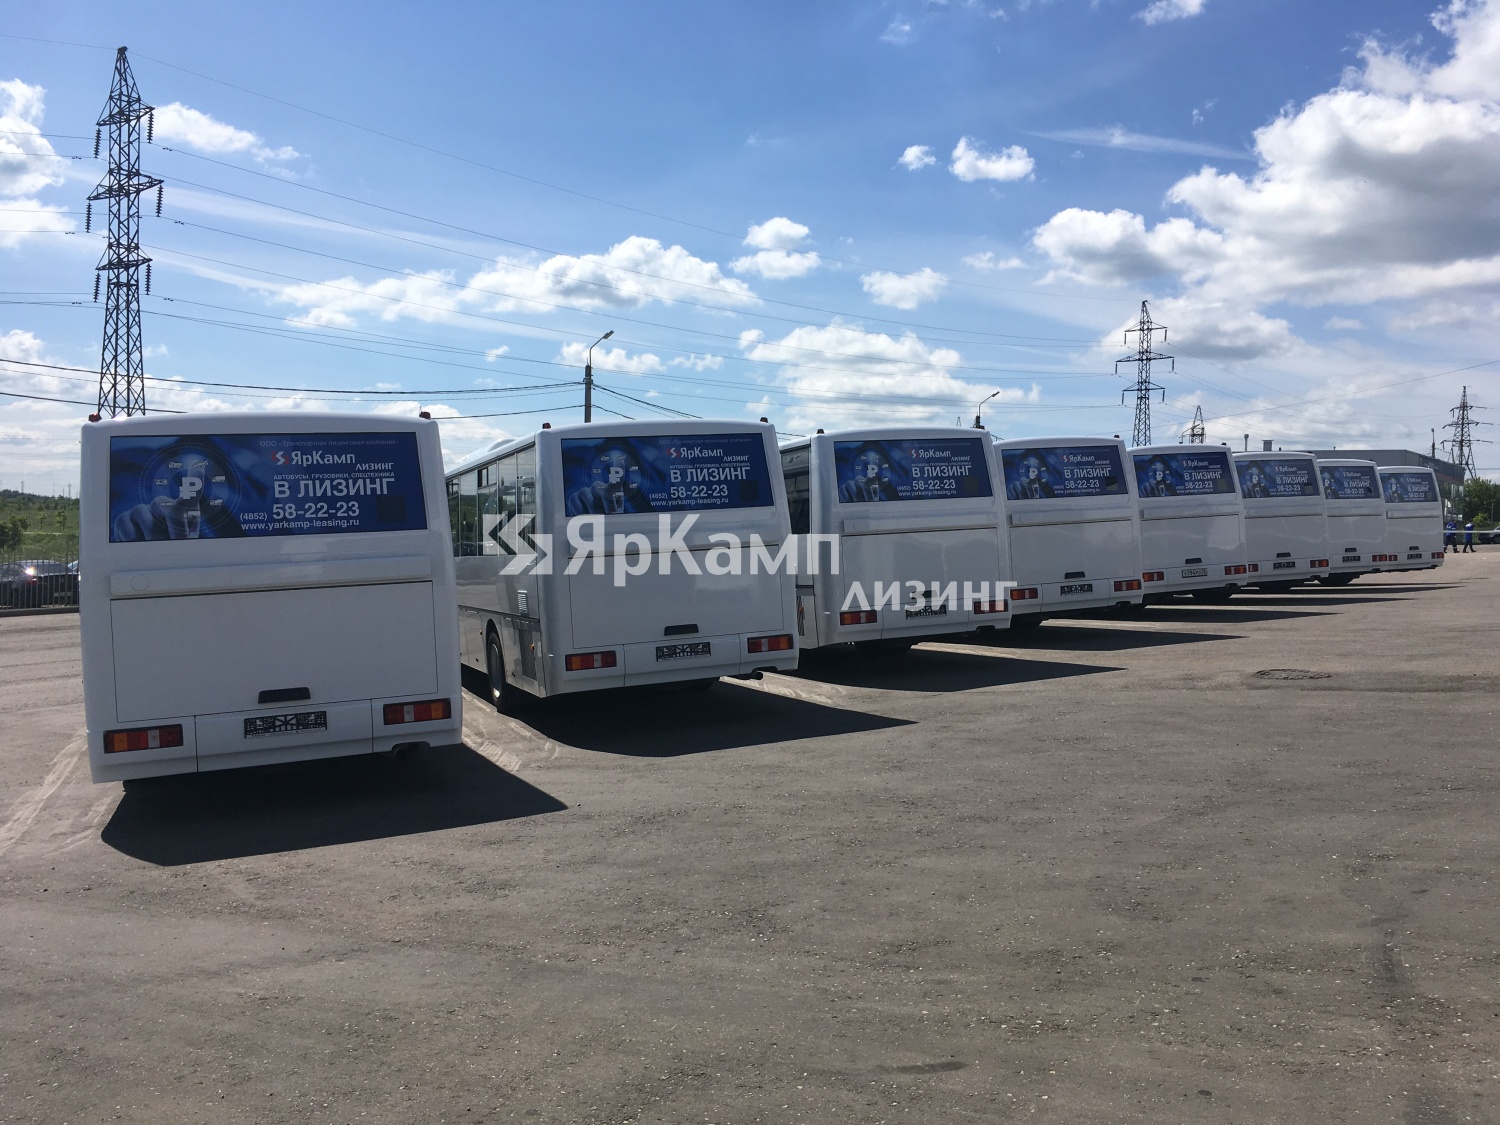 Автобусы КАВЗ 4238 отгружены на условиях финансовой аренды